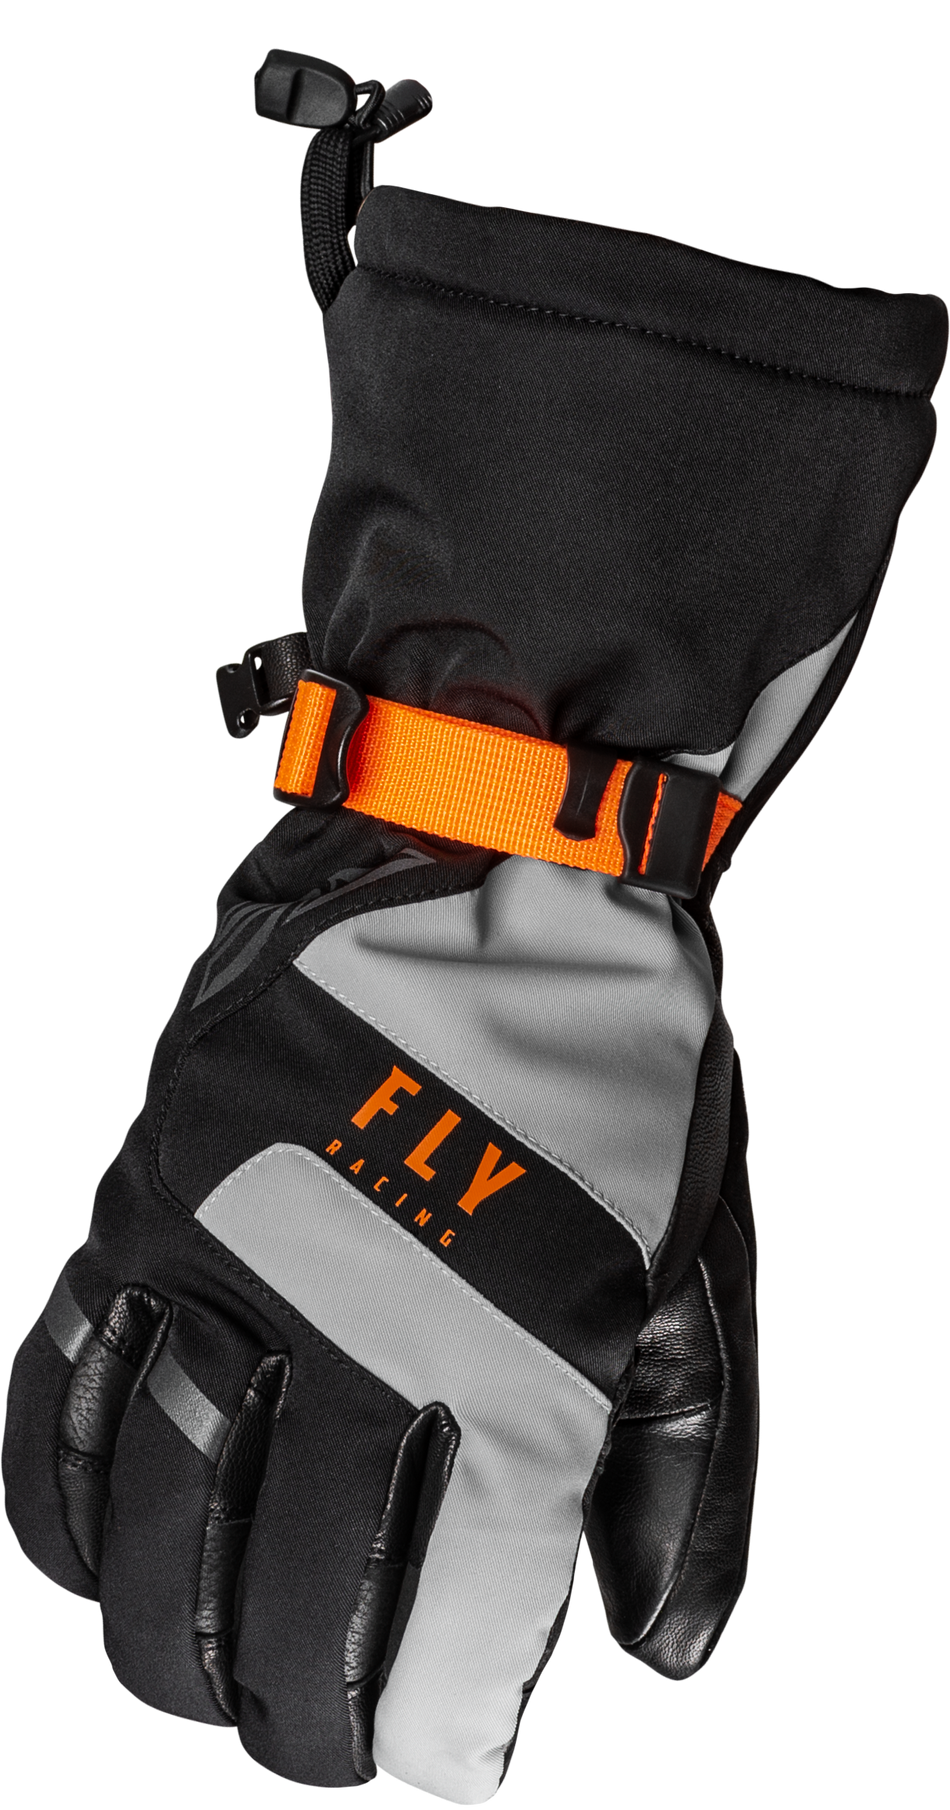 FLY RACING Highland Gloves Black/Grey/Orange Md 363-3952M